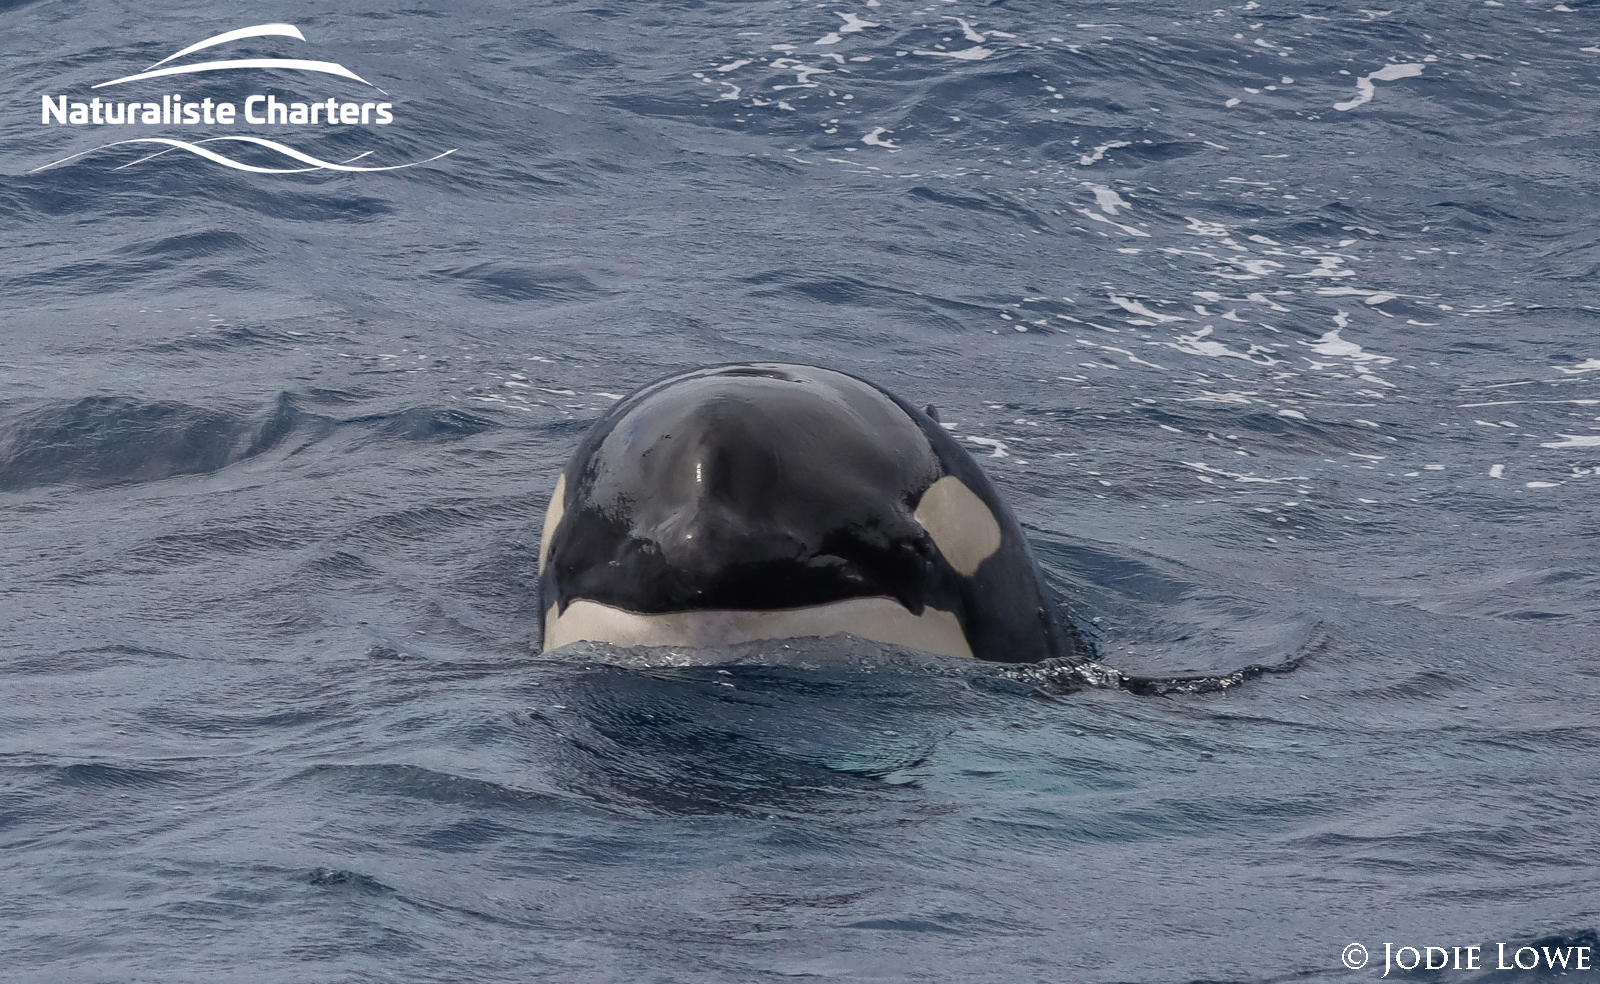 Orca whale peeking